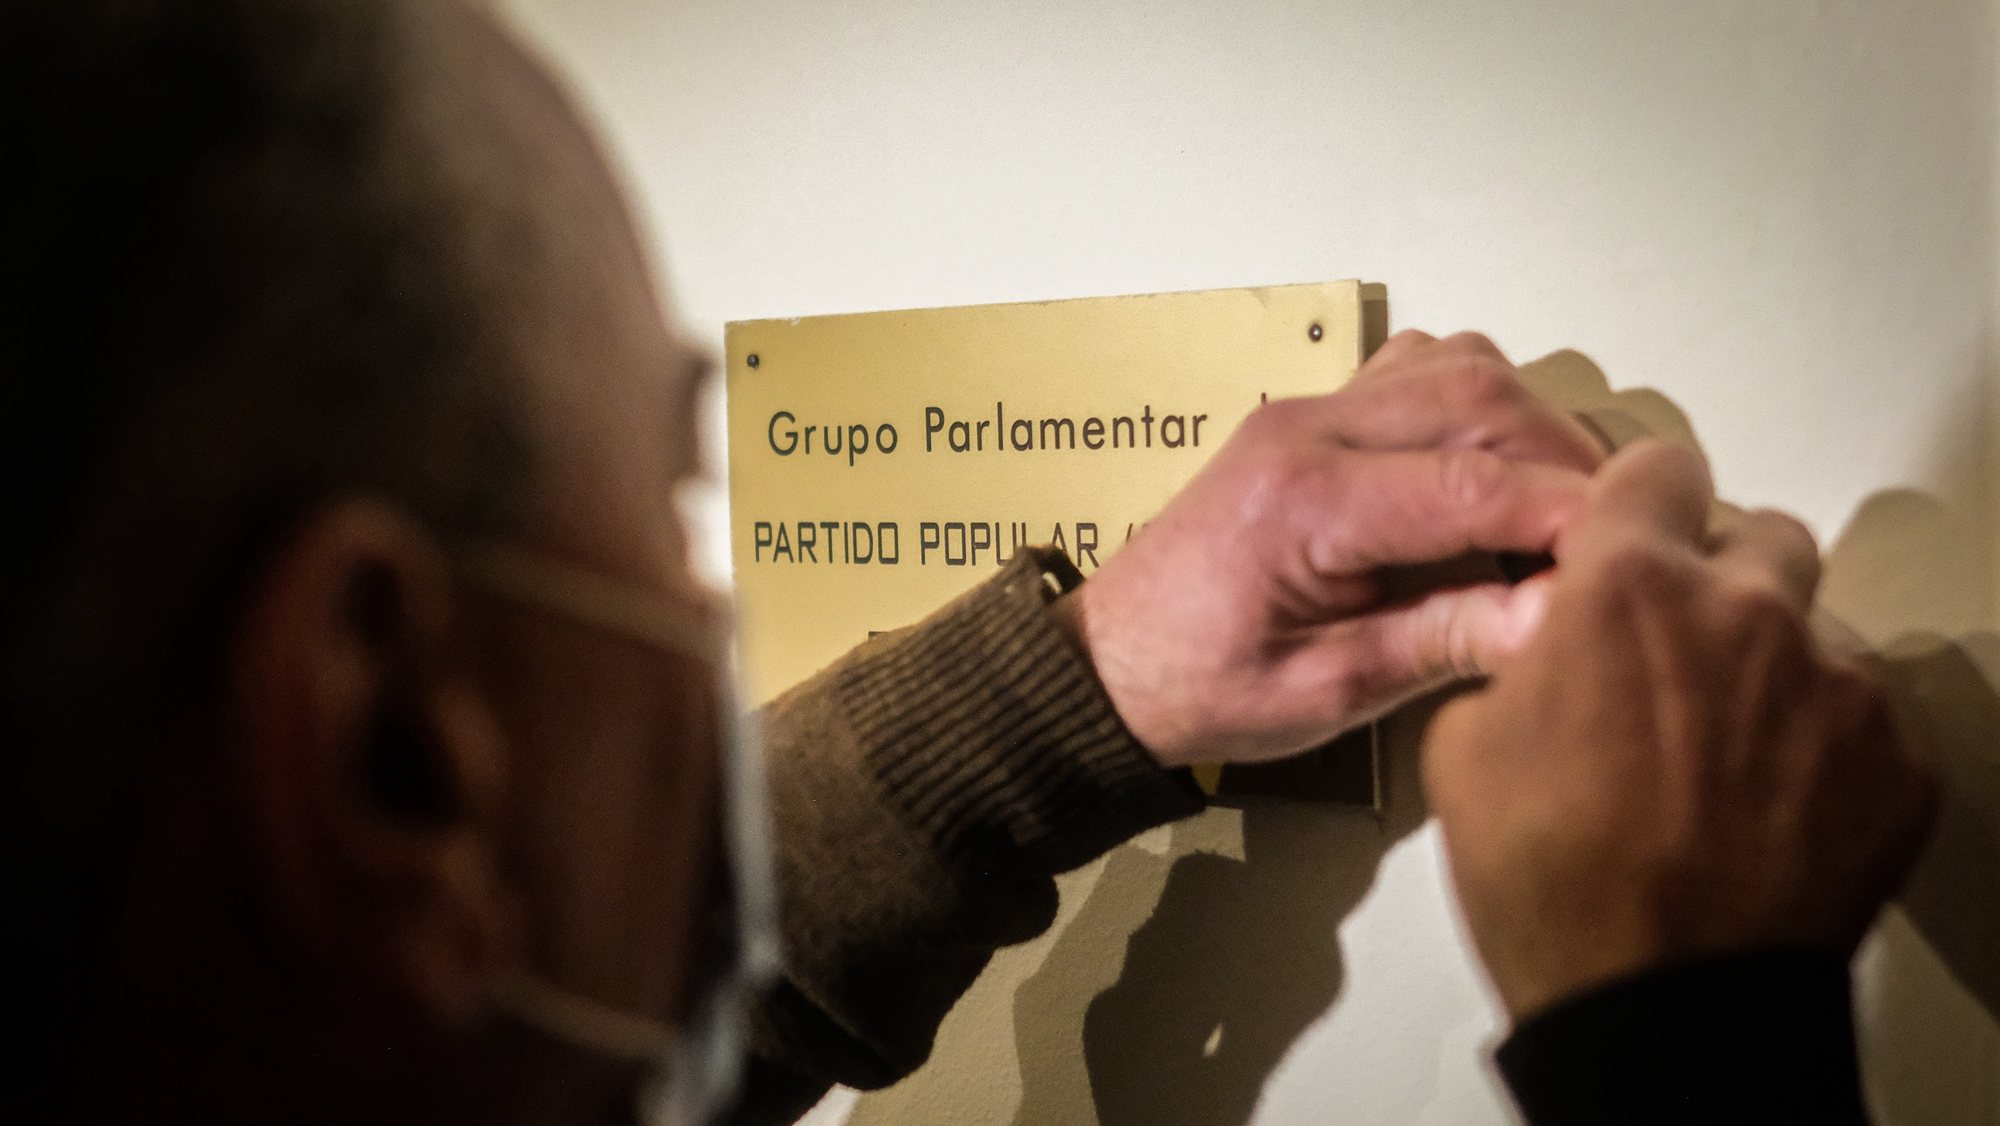 Um carpinteiro remove a placa do grupo parlamentar do CDS-PP na Assembleia da República, em Lisboa, 10 de fevereiro de 2022. O CDS-PP não elegeu nenhum deputado perdendo assim a representação parlamentar pela primeira vez na história do partido. MÁRIO CRUZ/LUSA